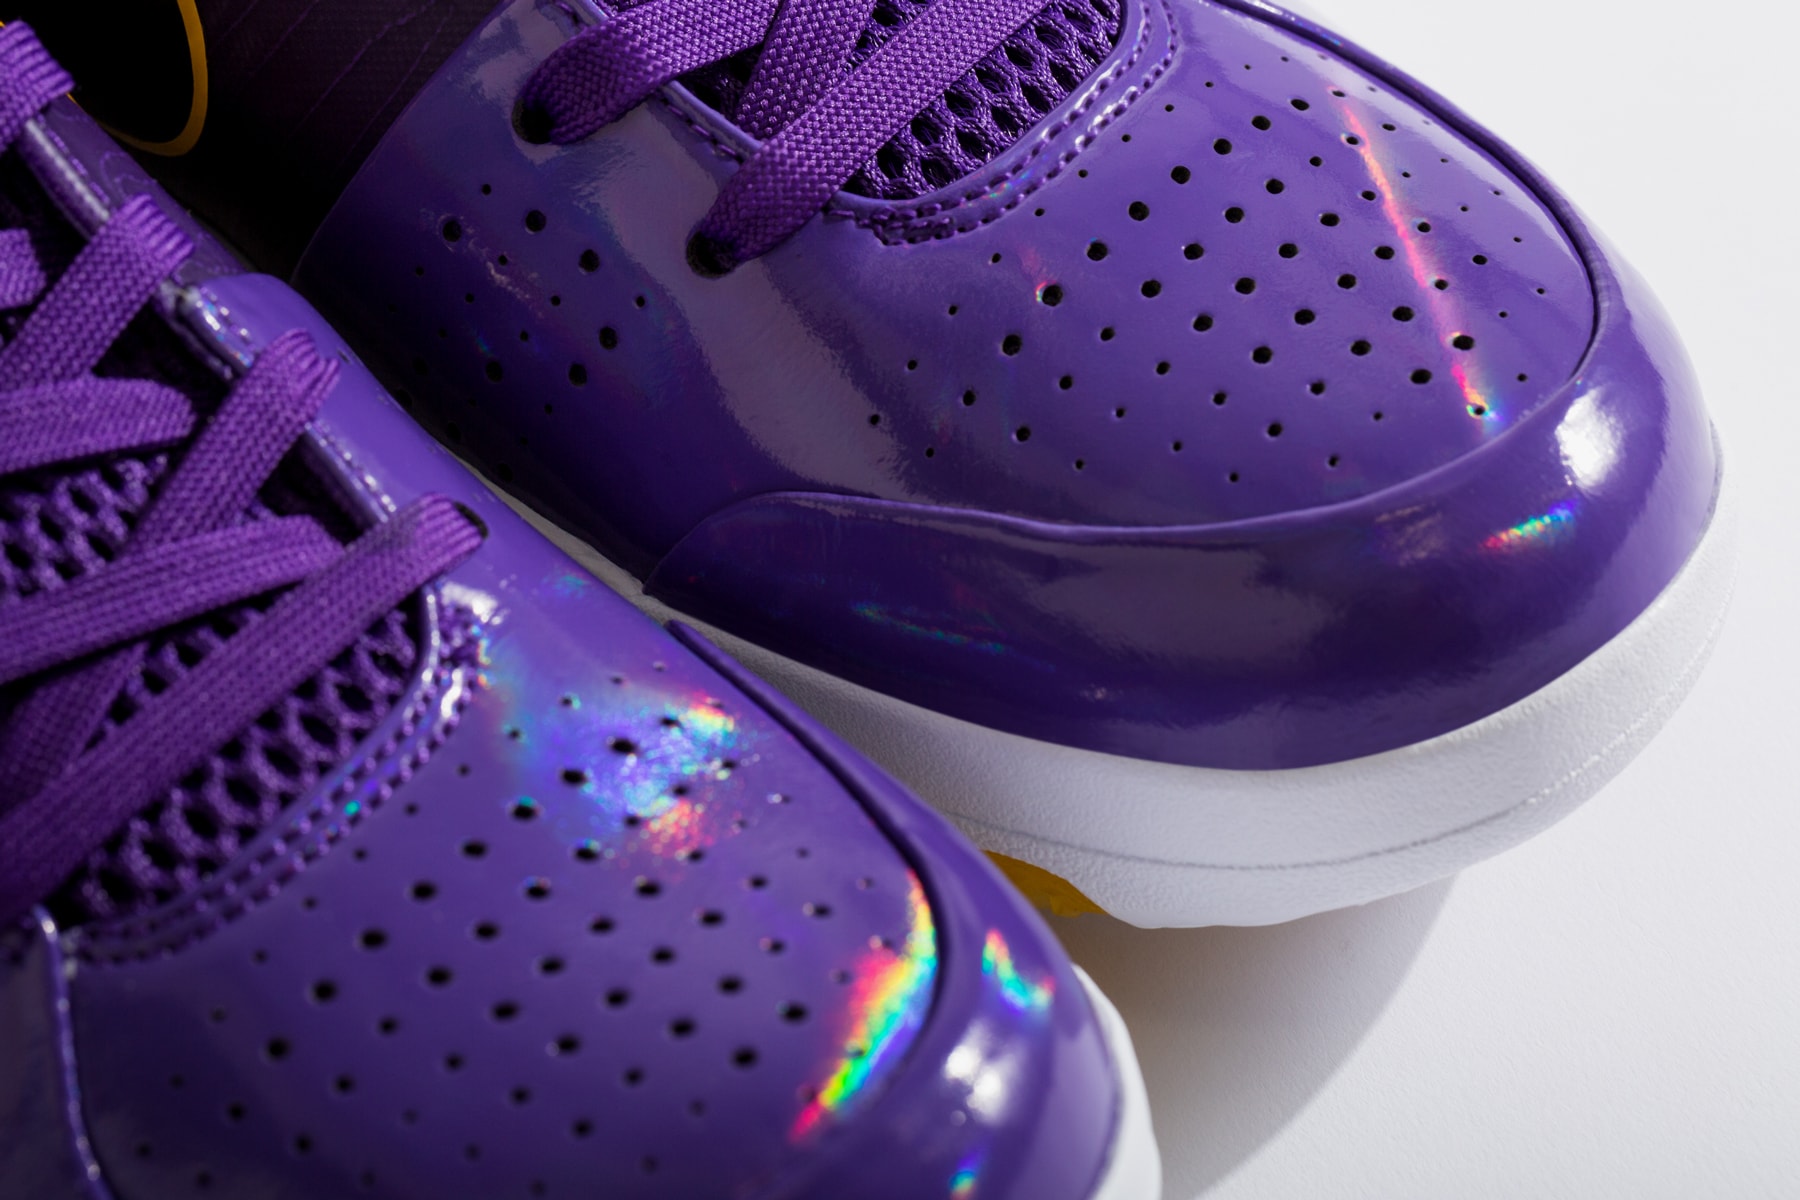 Nike Undefeated x Kobe 4 Protro 'Court Purple